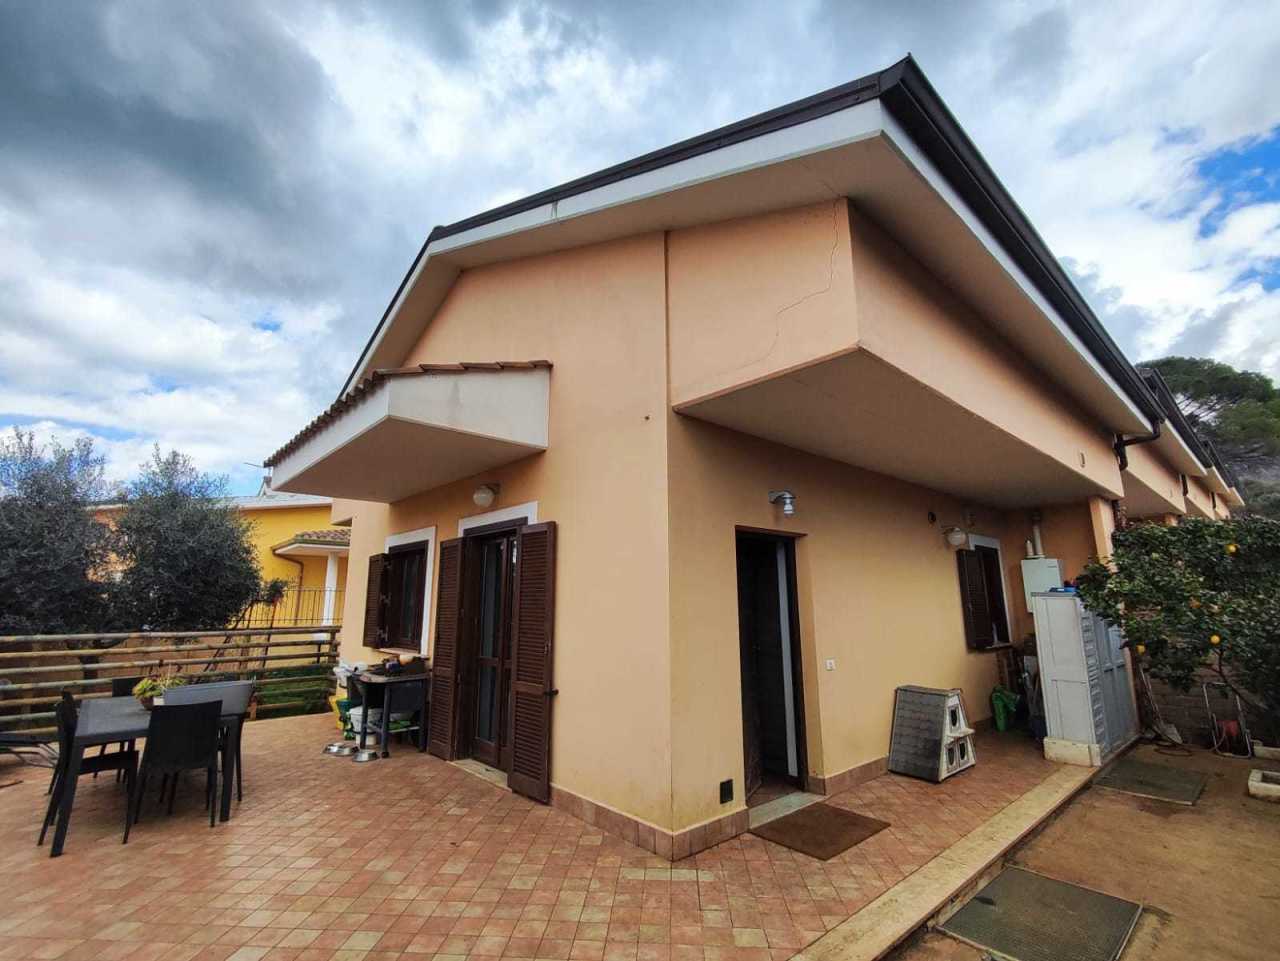 Villa a Schiera in vendita a Marcellina, 6 locali, prezzo € 219.000 | PortaleAgenzieImmobiliari.it